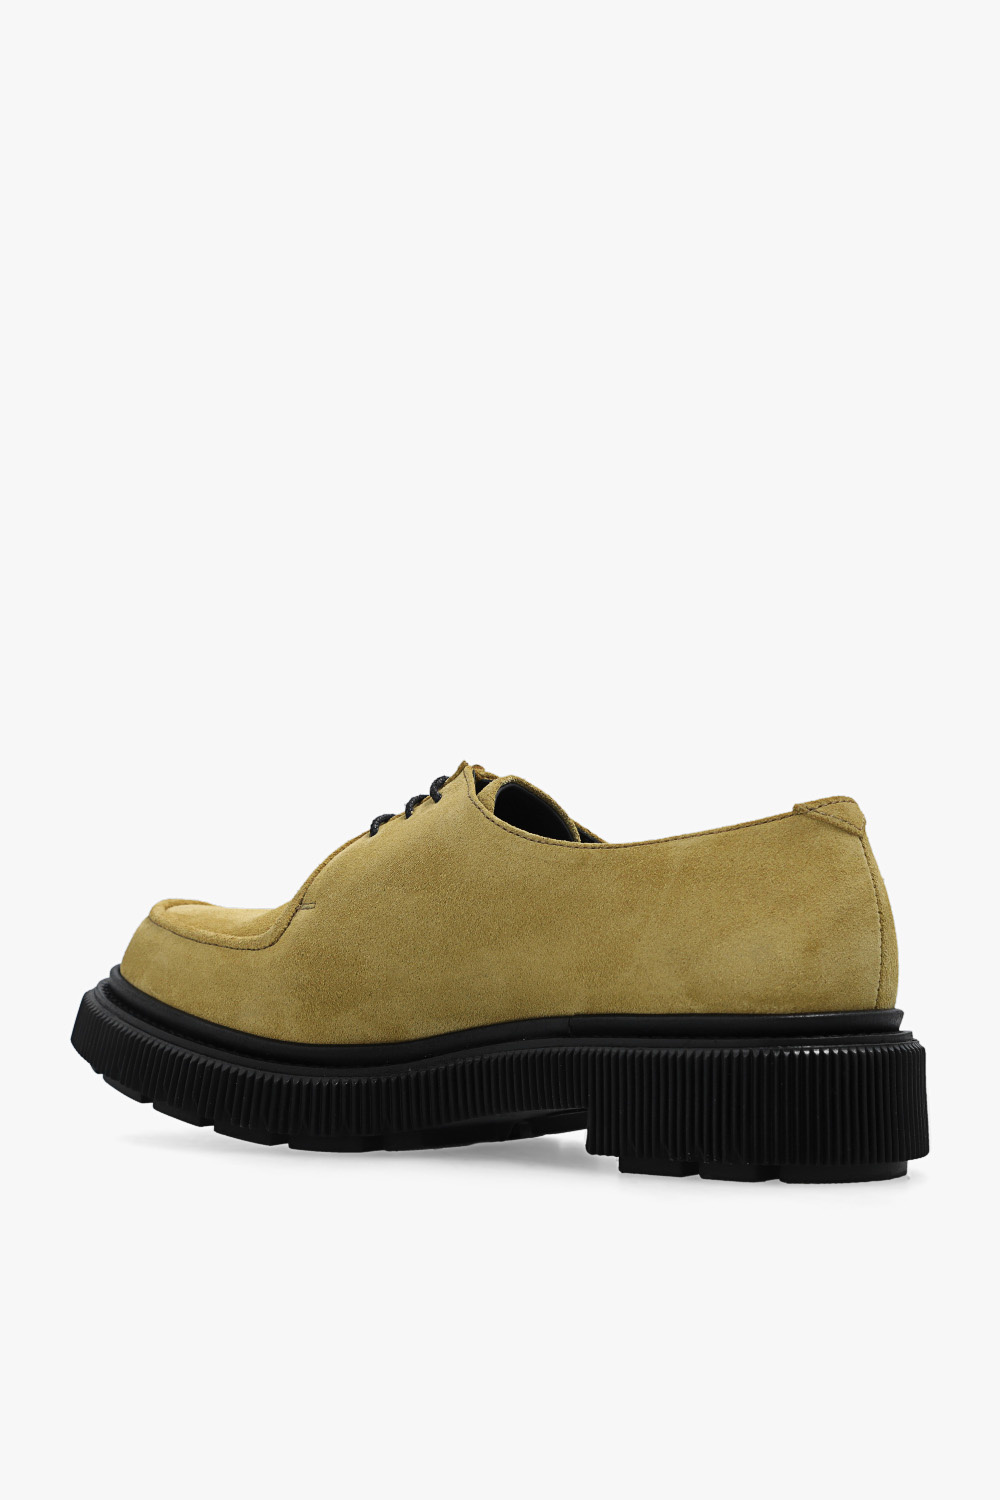 Adieu Paris ‘Type 124’ leather shoes